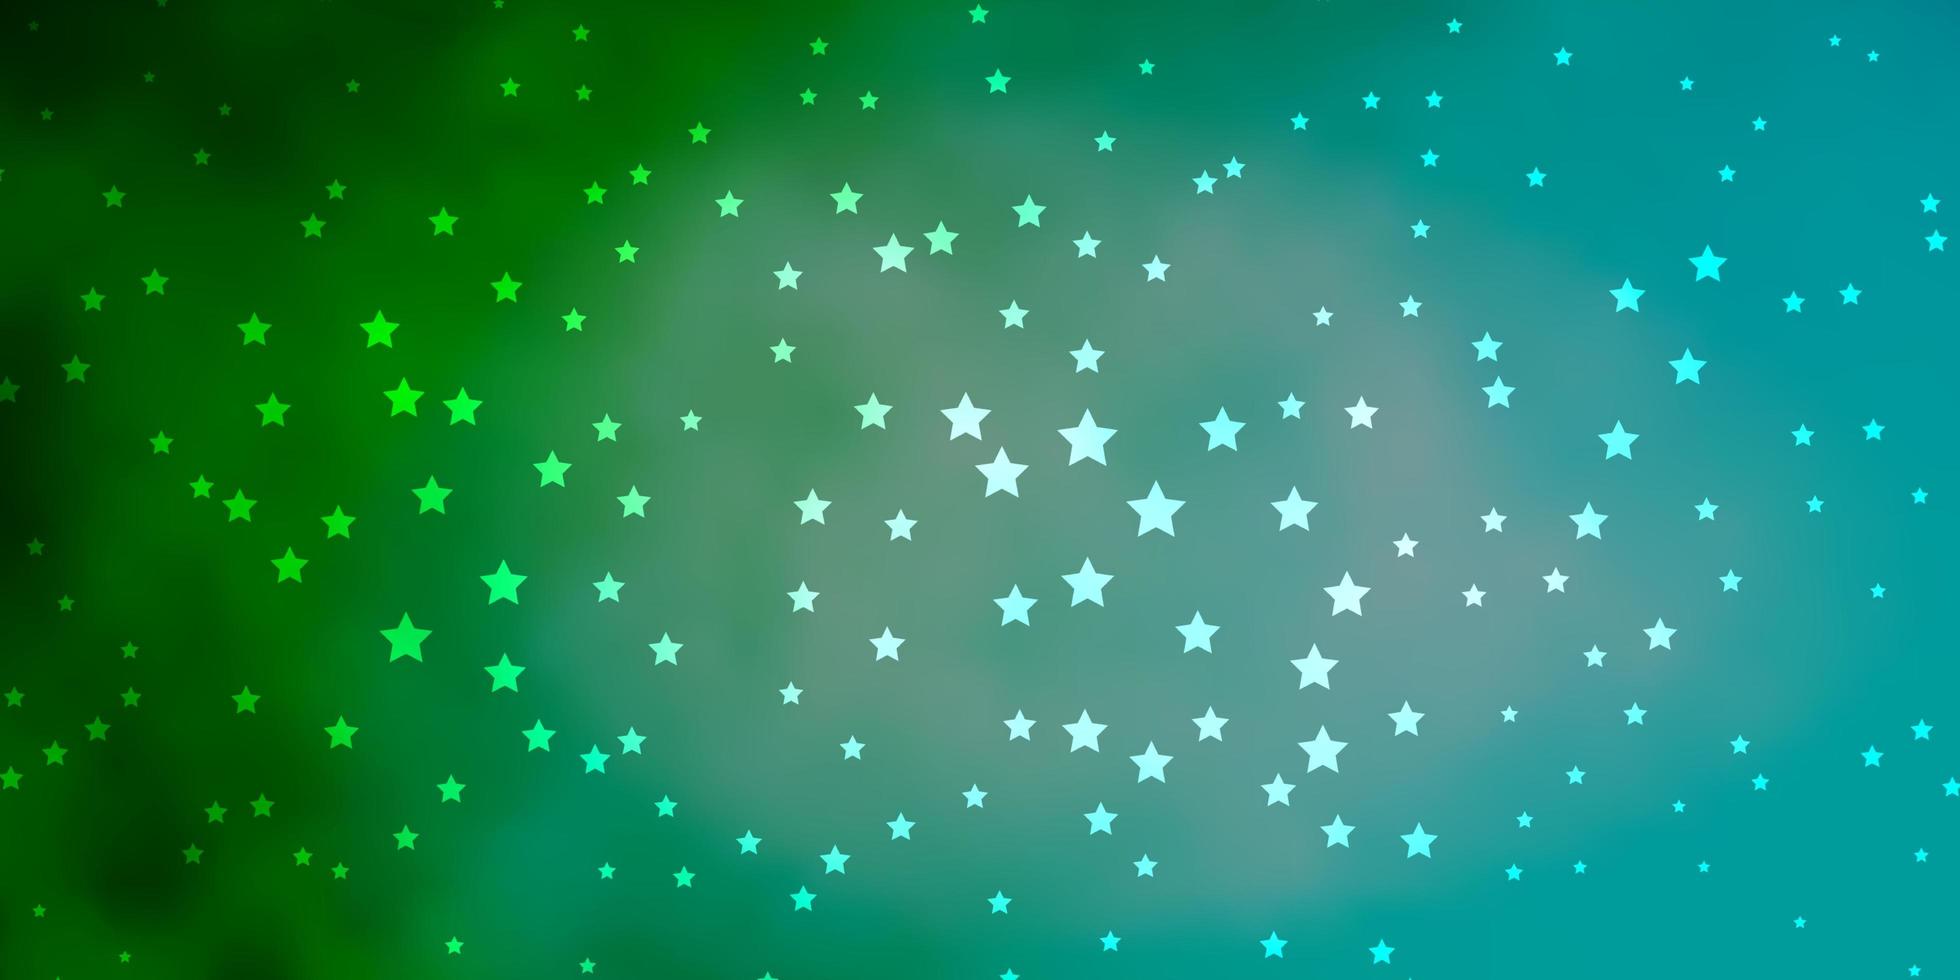 mörkblå, grön vektormall med neonstjärnor. vektor